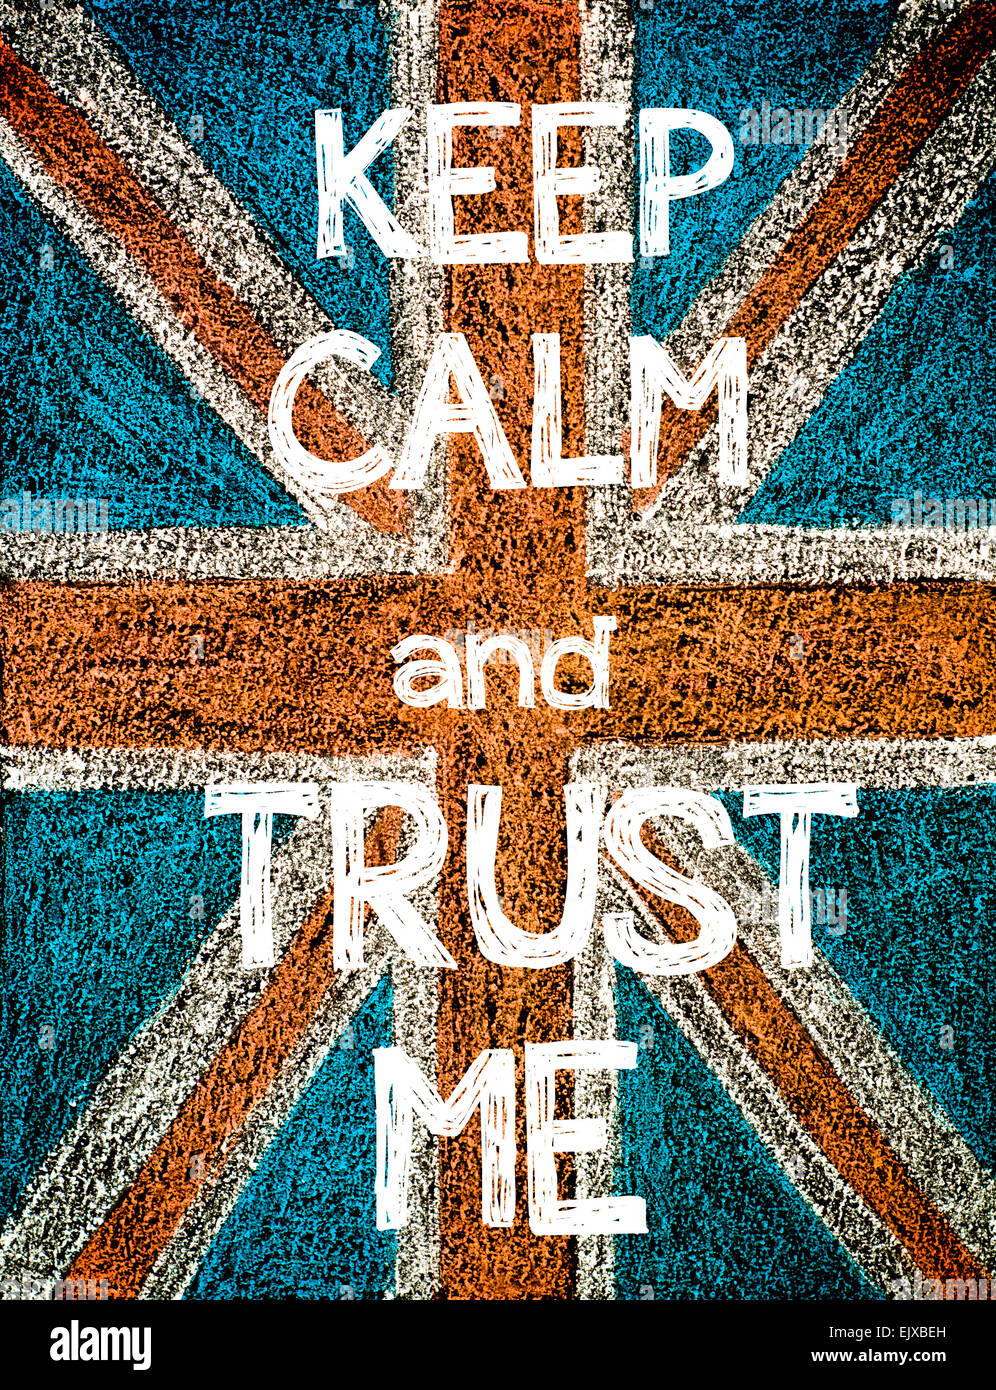 Mantener la calma y confianza Me. Reino Unido (British Union Jack) bandera, vintage de dibujo a mano alzada con tiza en el pizarrón, humor imagen concepto Foto de stock